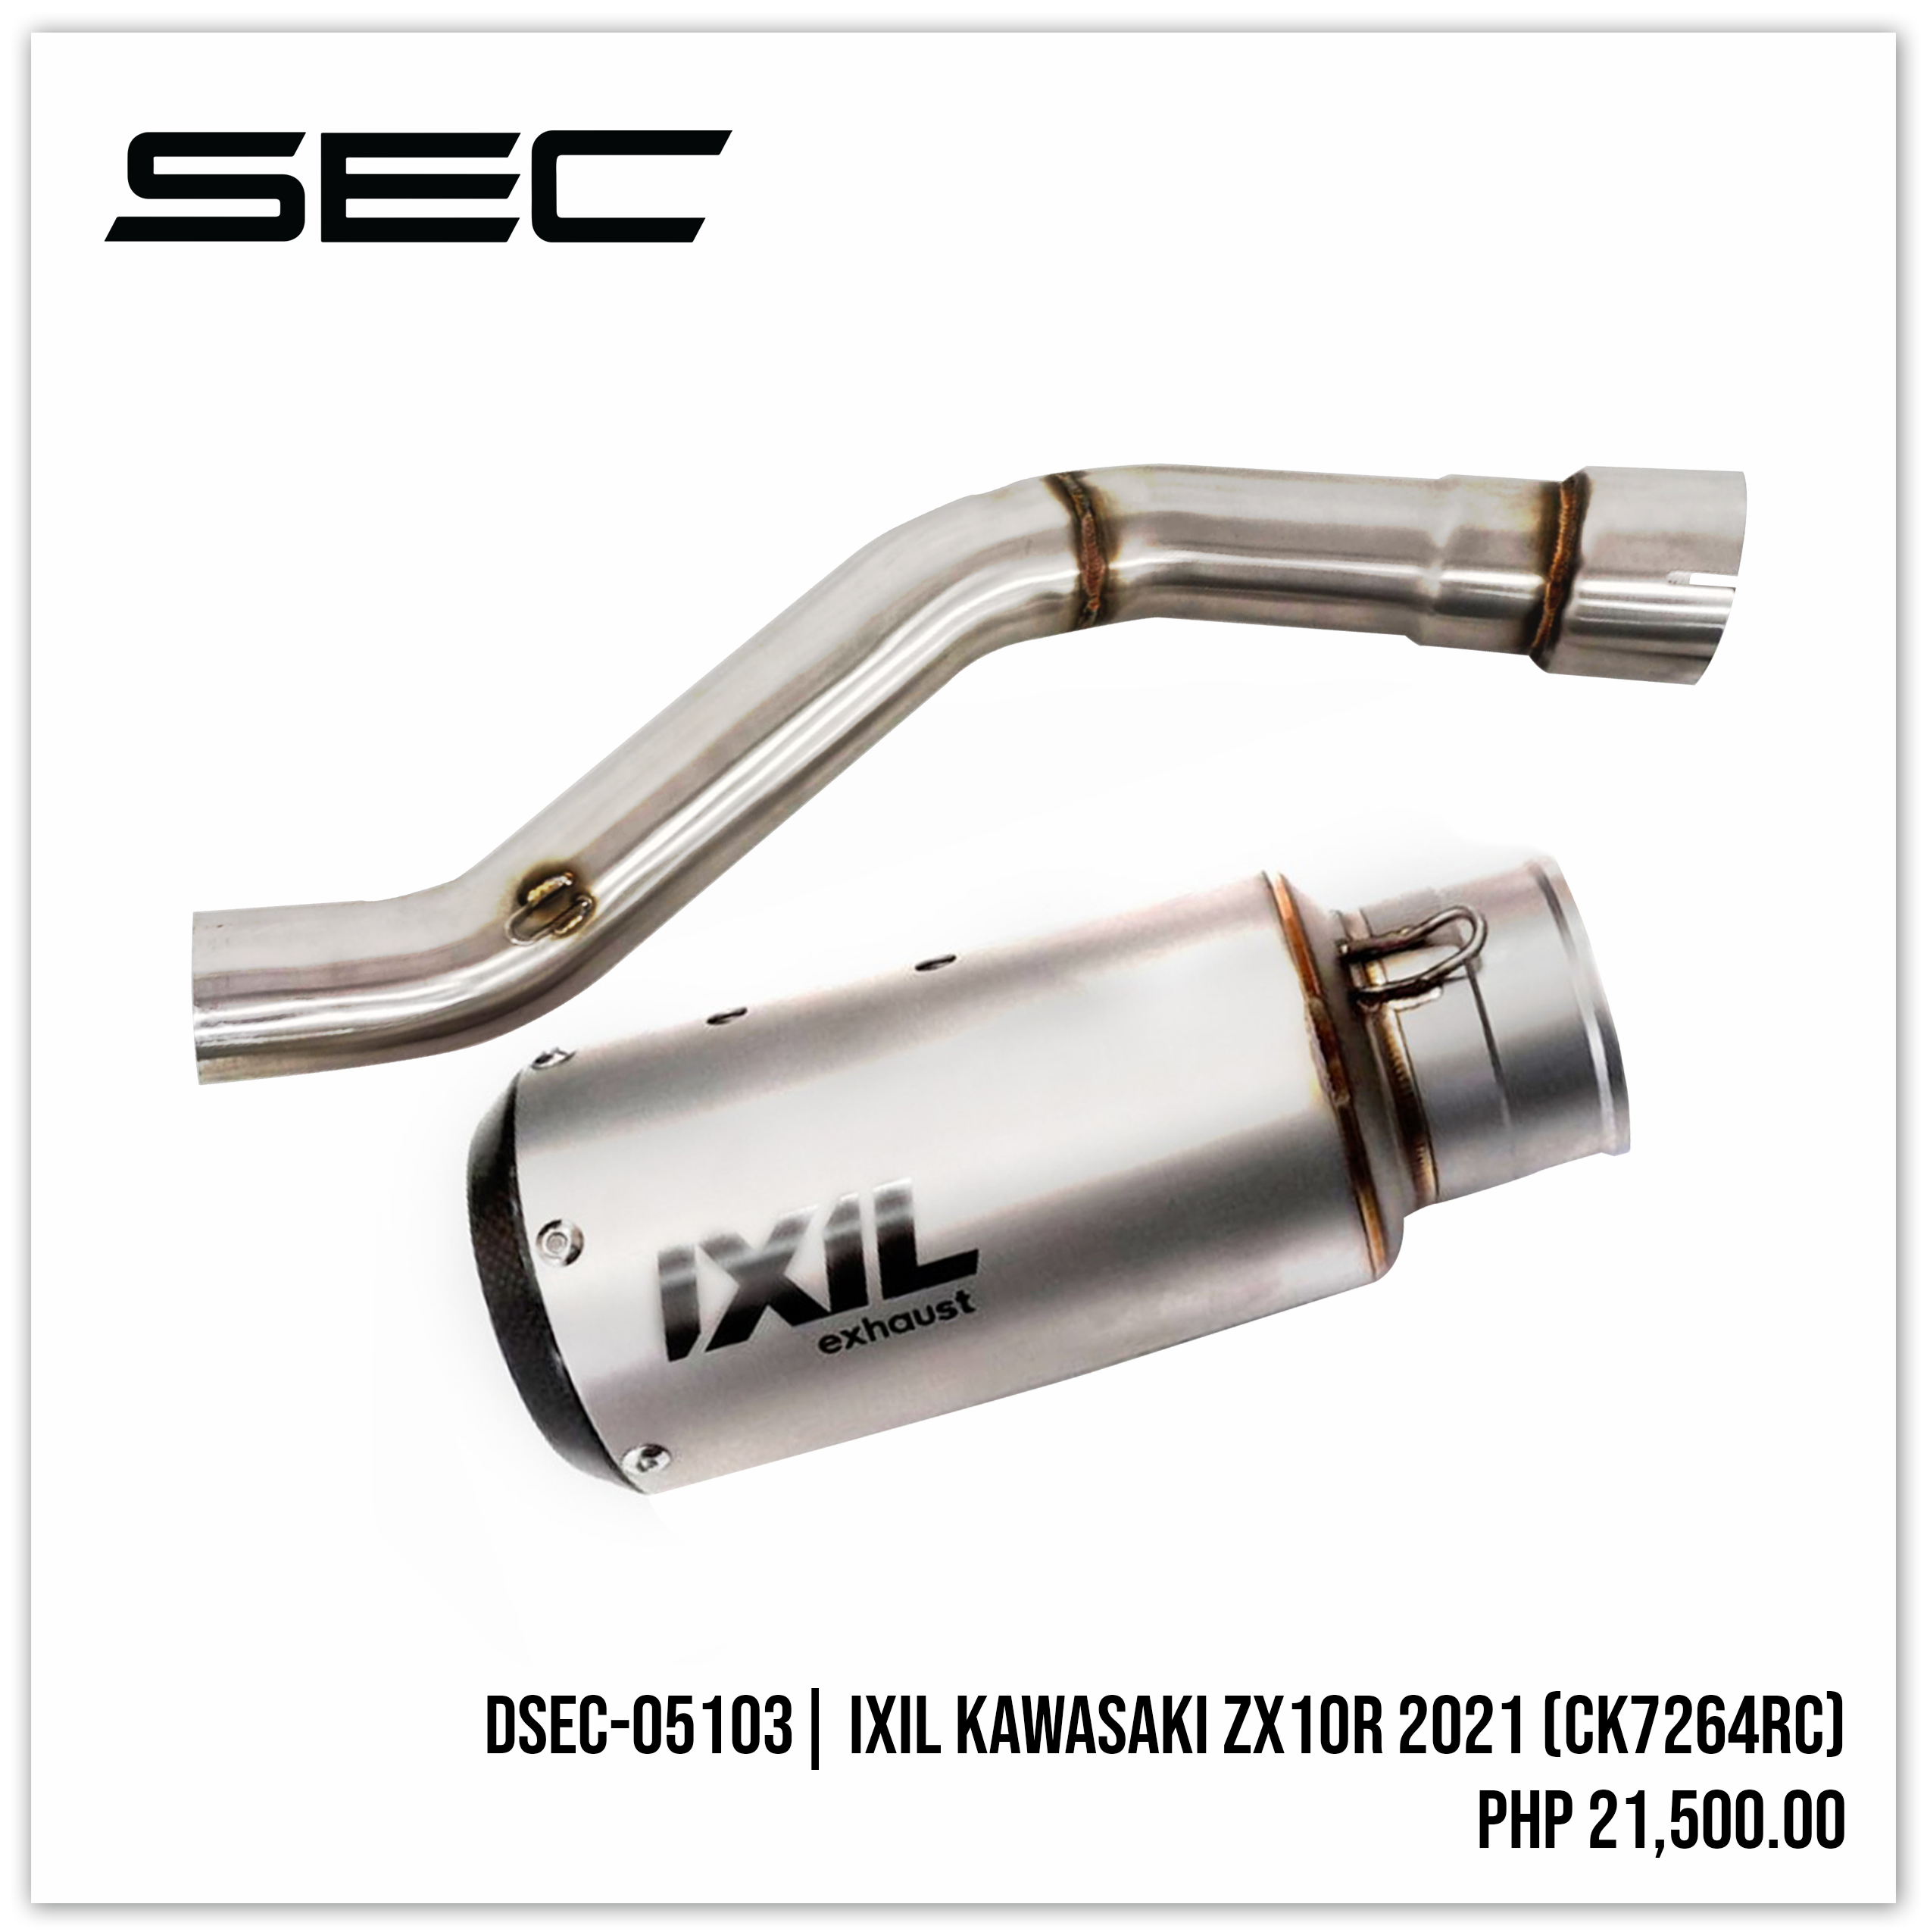 IXIL Kawasaki ZX10R 2021 (CK7264RC)